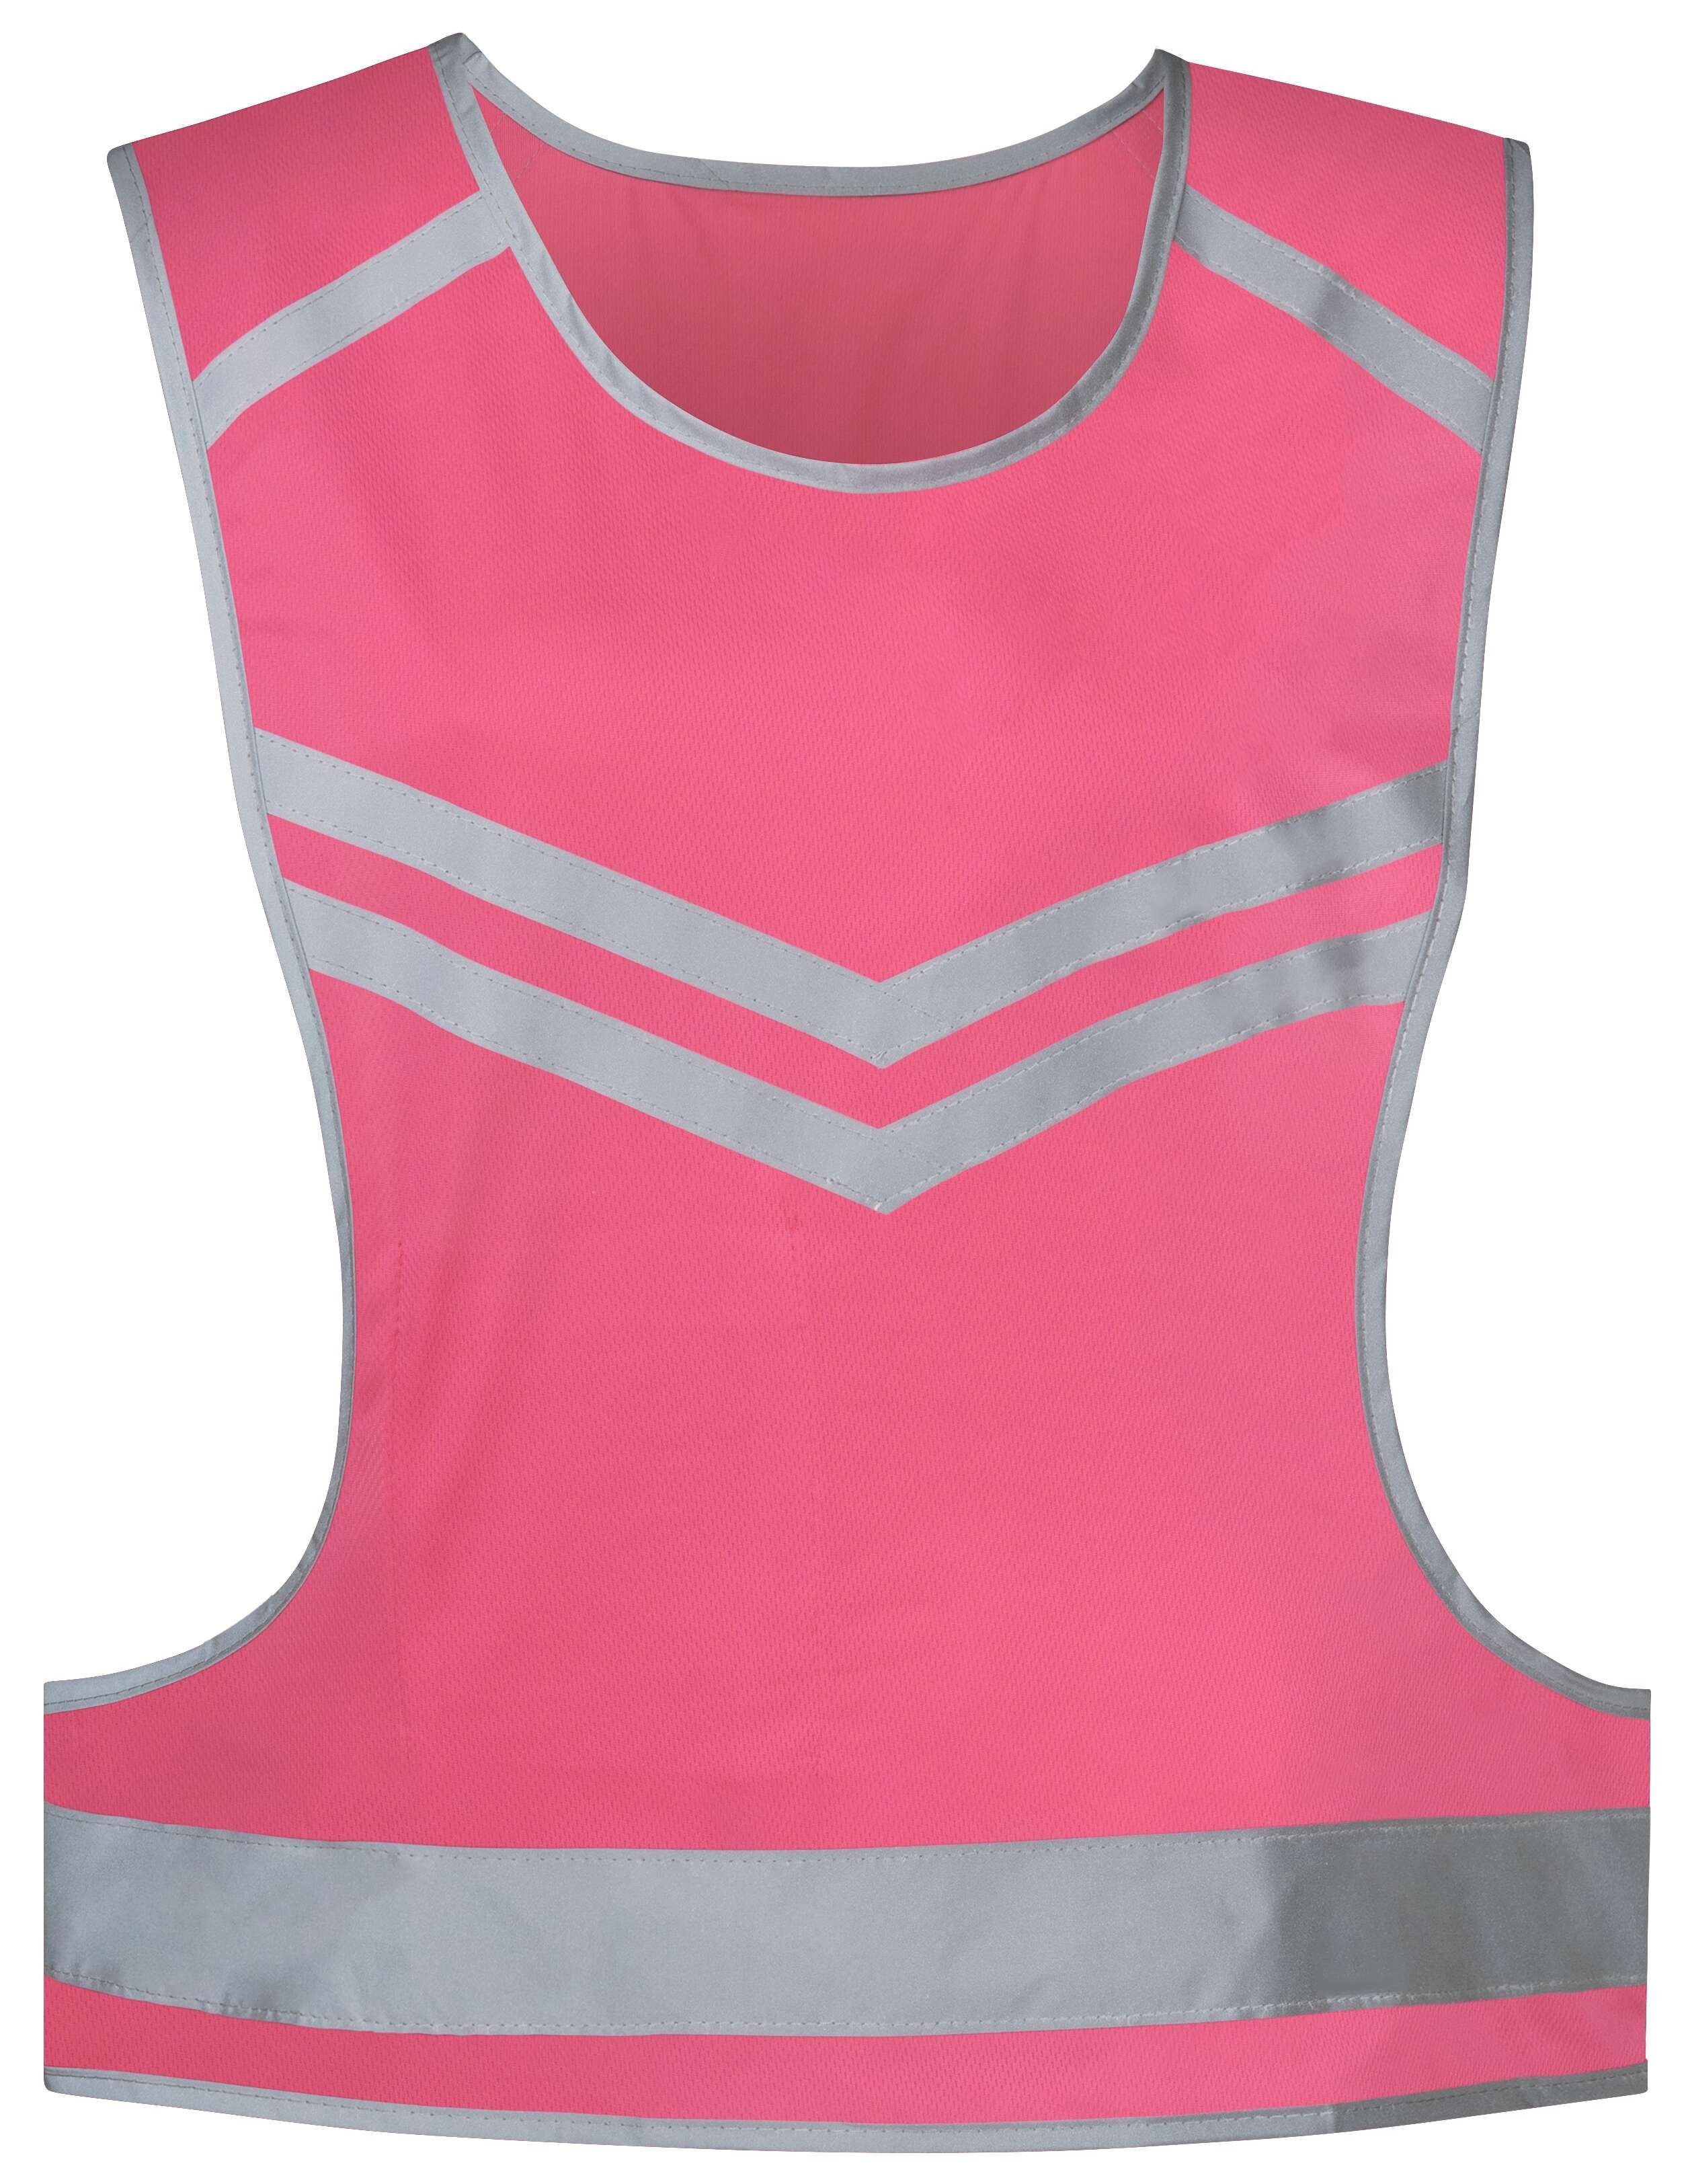 Vrijetijdsvest roze, unisex reflecterend vest, hardloopvest, fluorescerend vest maat S/M